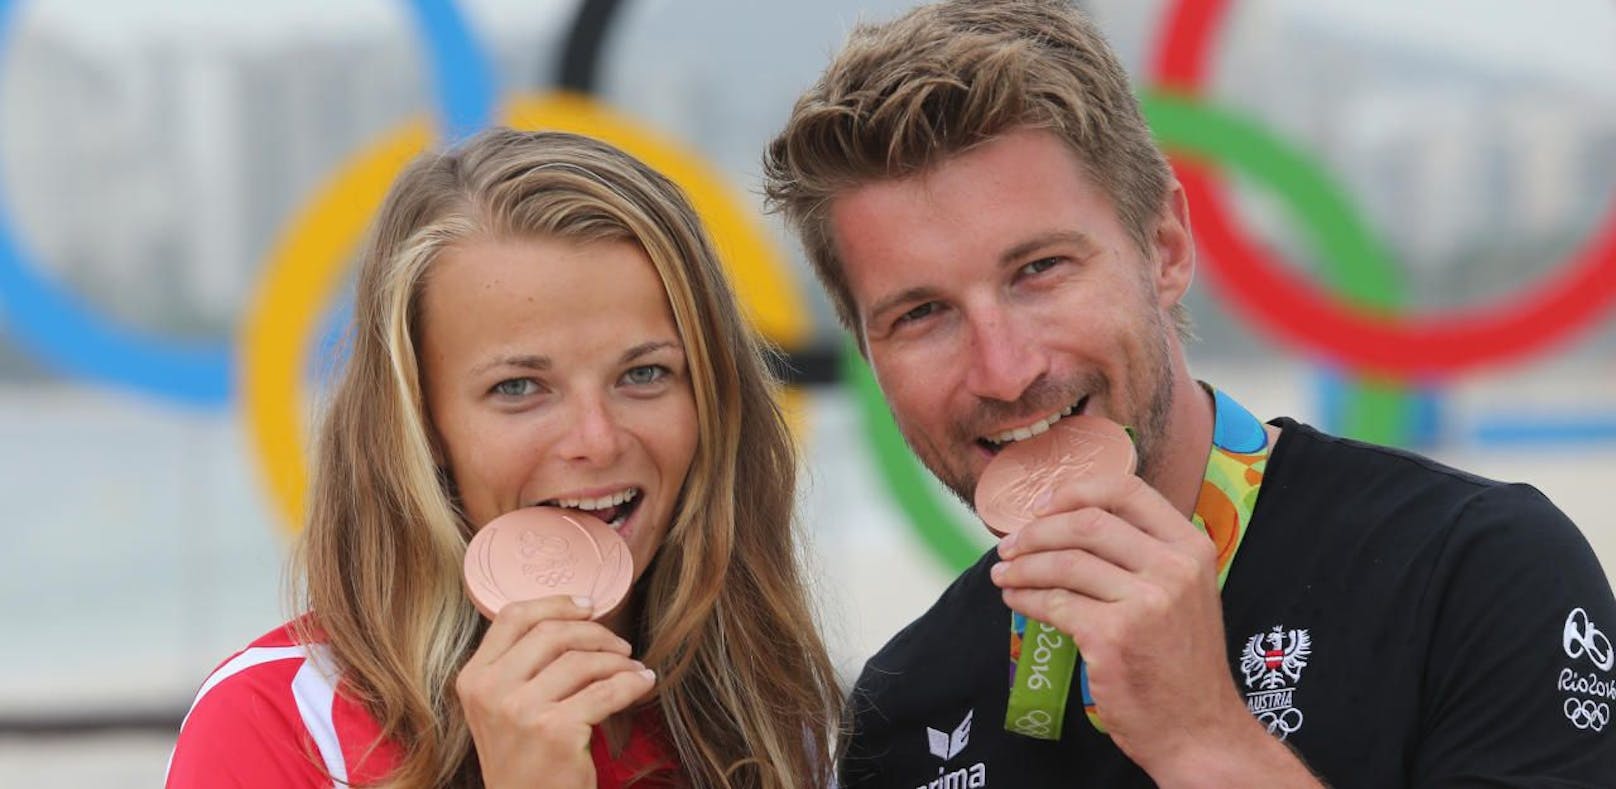 Österreichs Olympia-Medaillengewinner: Das Segel-Duo Tanja Frank und Thomas Zajac holte Bronze im &quot;Nacra 17&quot; und kämpft nun gegen den Rost.